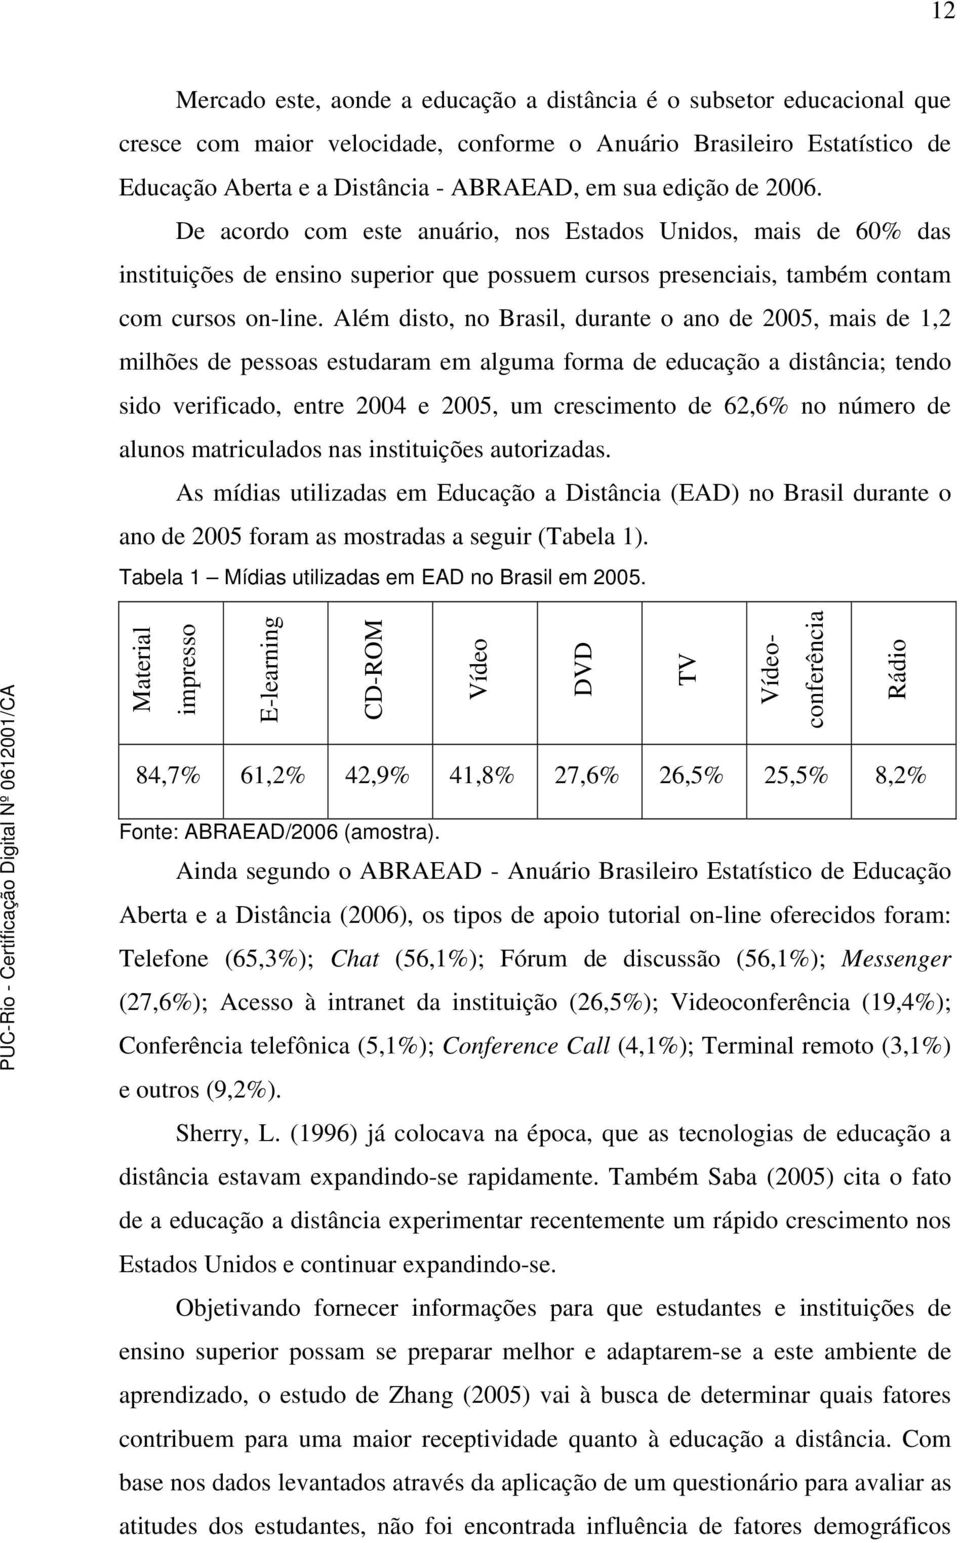 Além disto, no Brasil, durante o ano de 2005, mais de 1,2 milhões de pessoas estudaram em alguma forma de educação a distância; tendo sido verificado, entre 2004 e 2005, um crescimento de 62,6% no